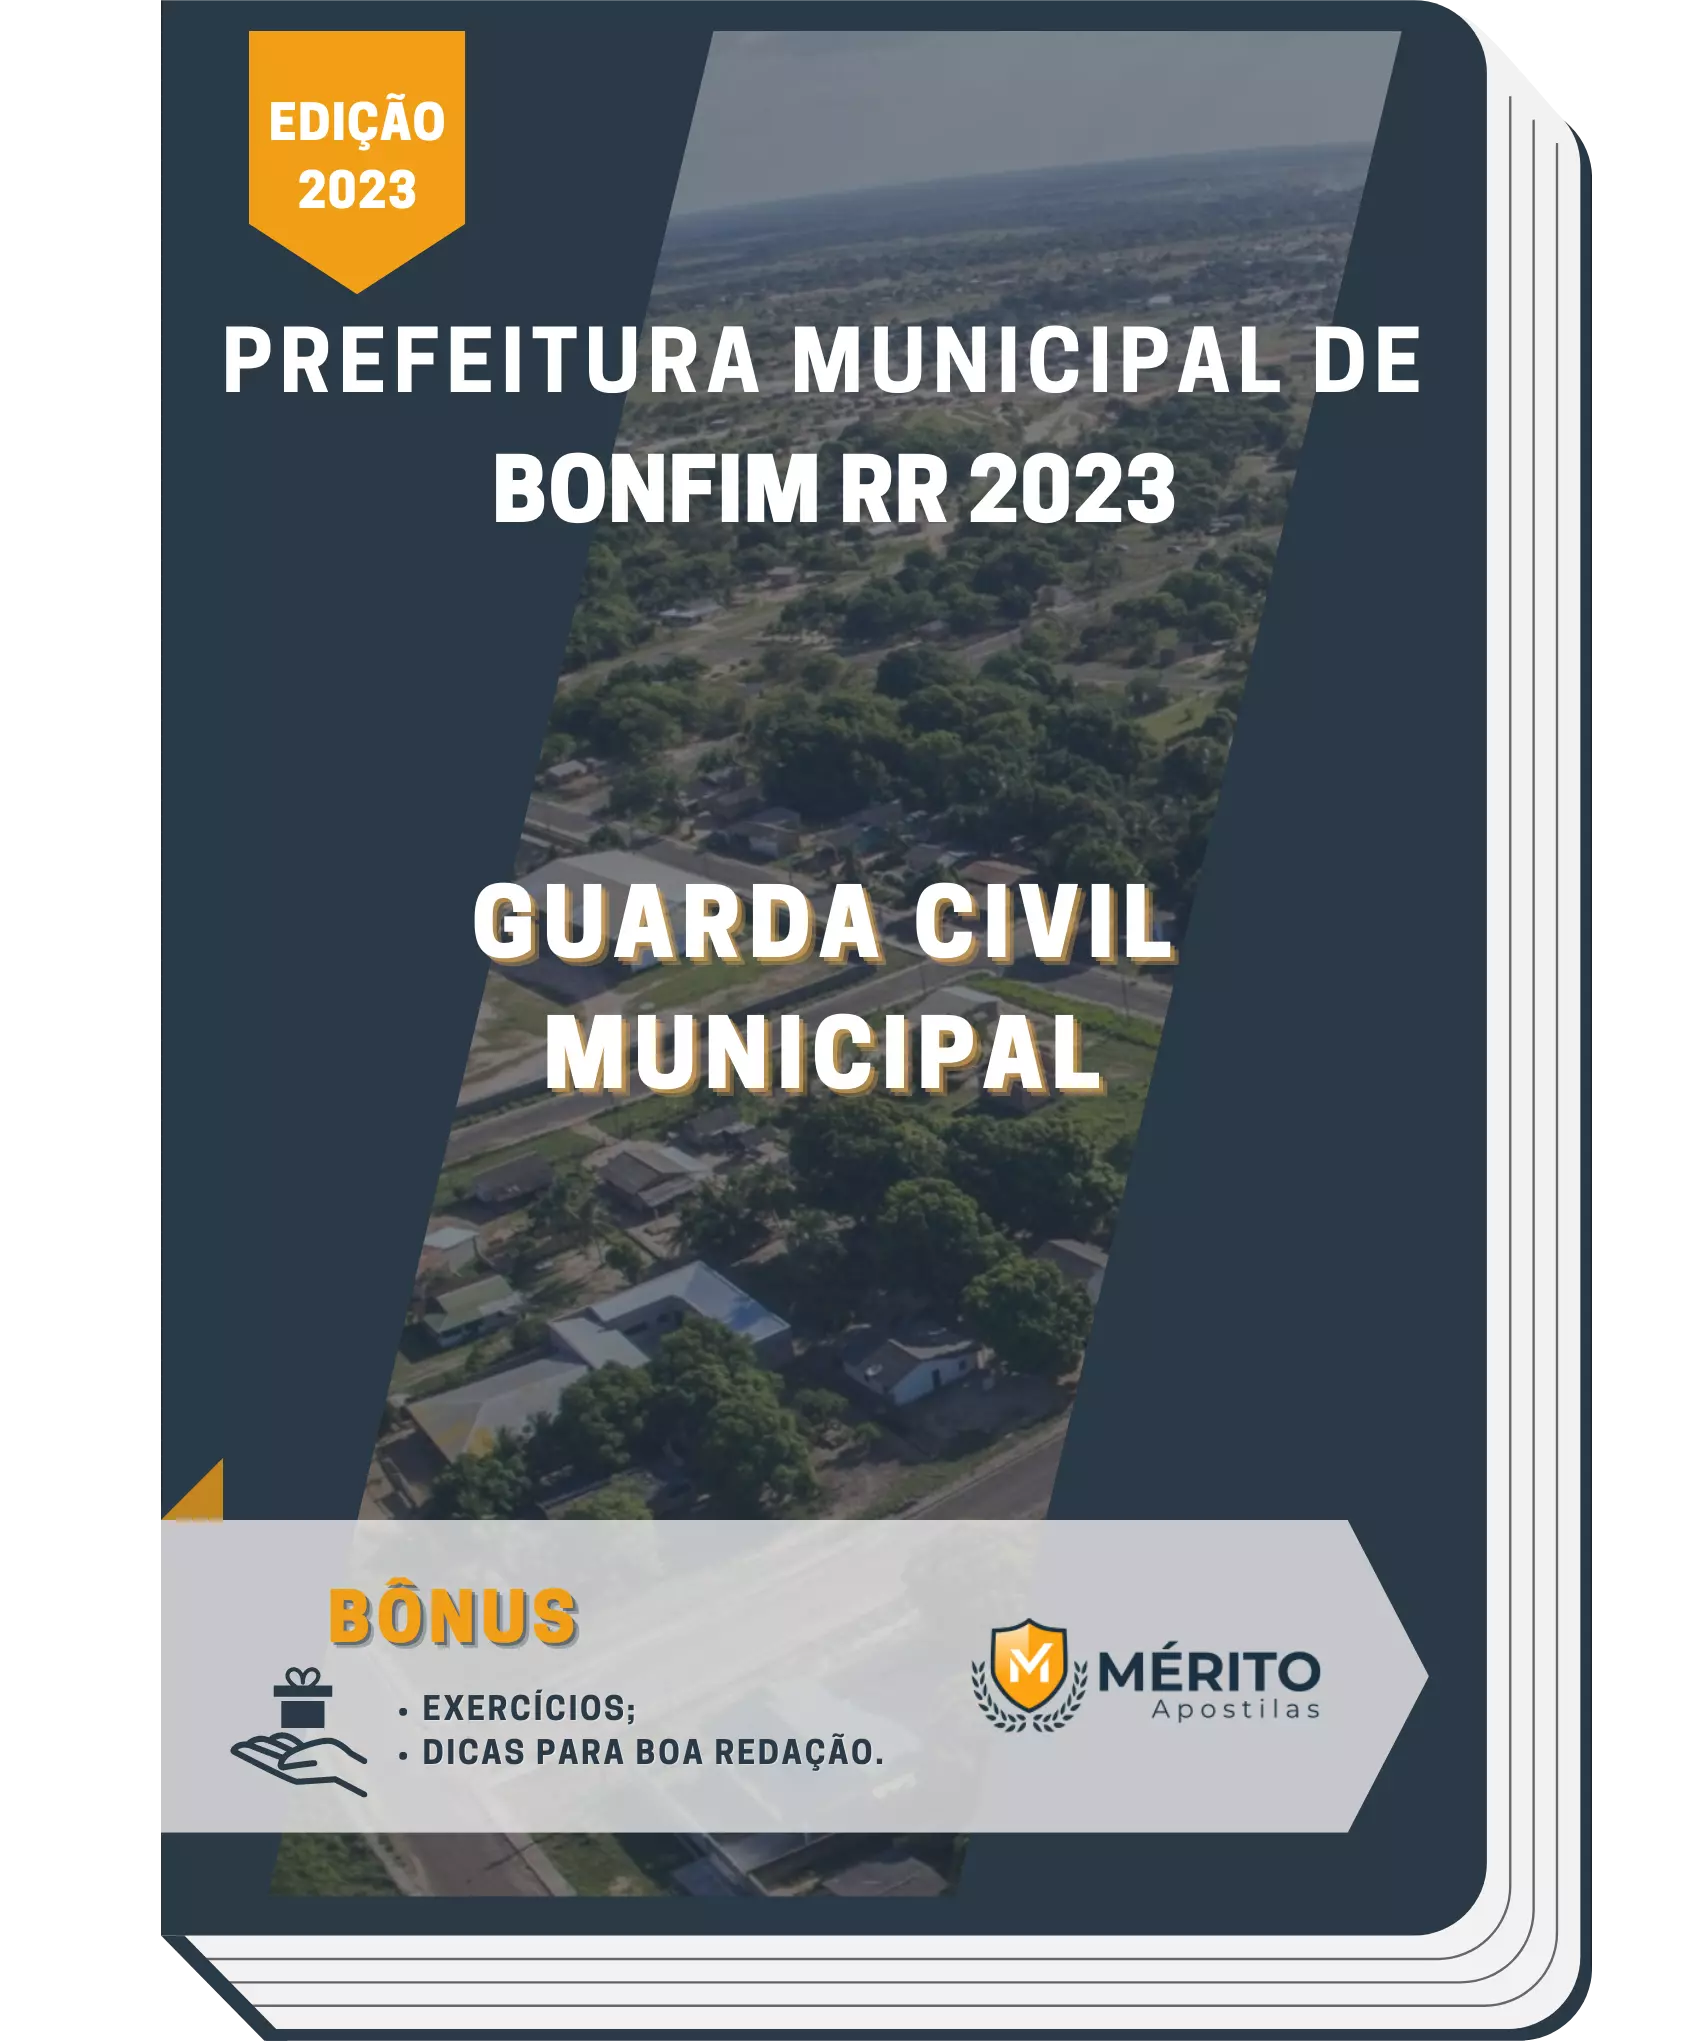 Proclamação da República do Brasil – Prefeitura Municipal de Chaval